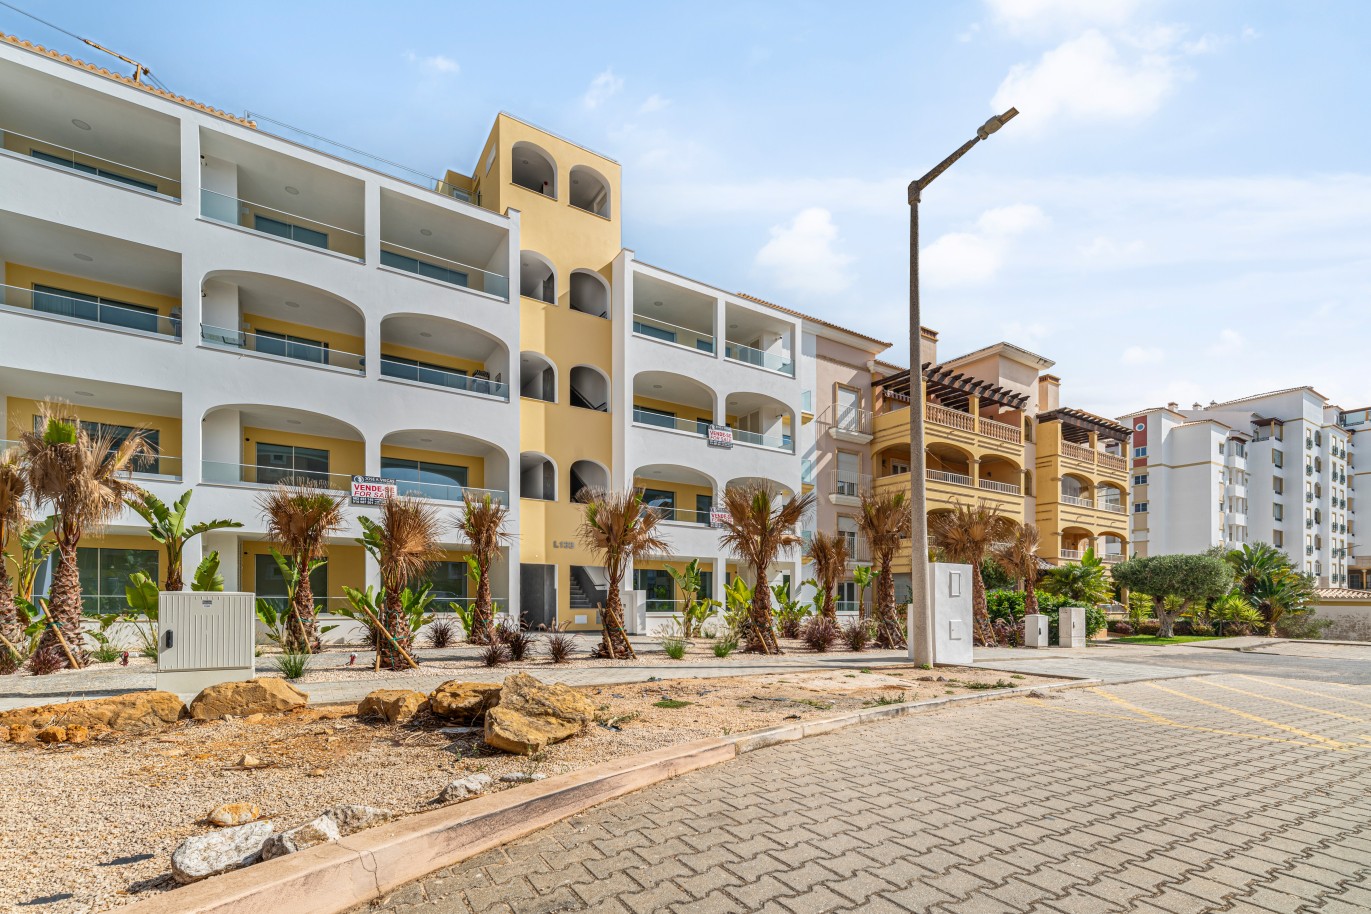 Verkauf einer Wohnung im Bau, mit Terrasse, Lagos, Algarve, Portugal_238141